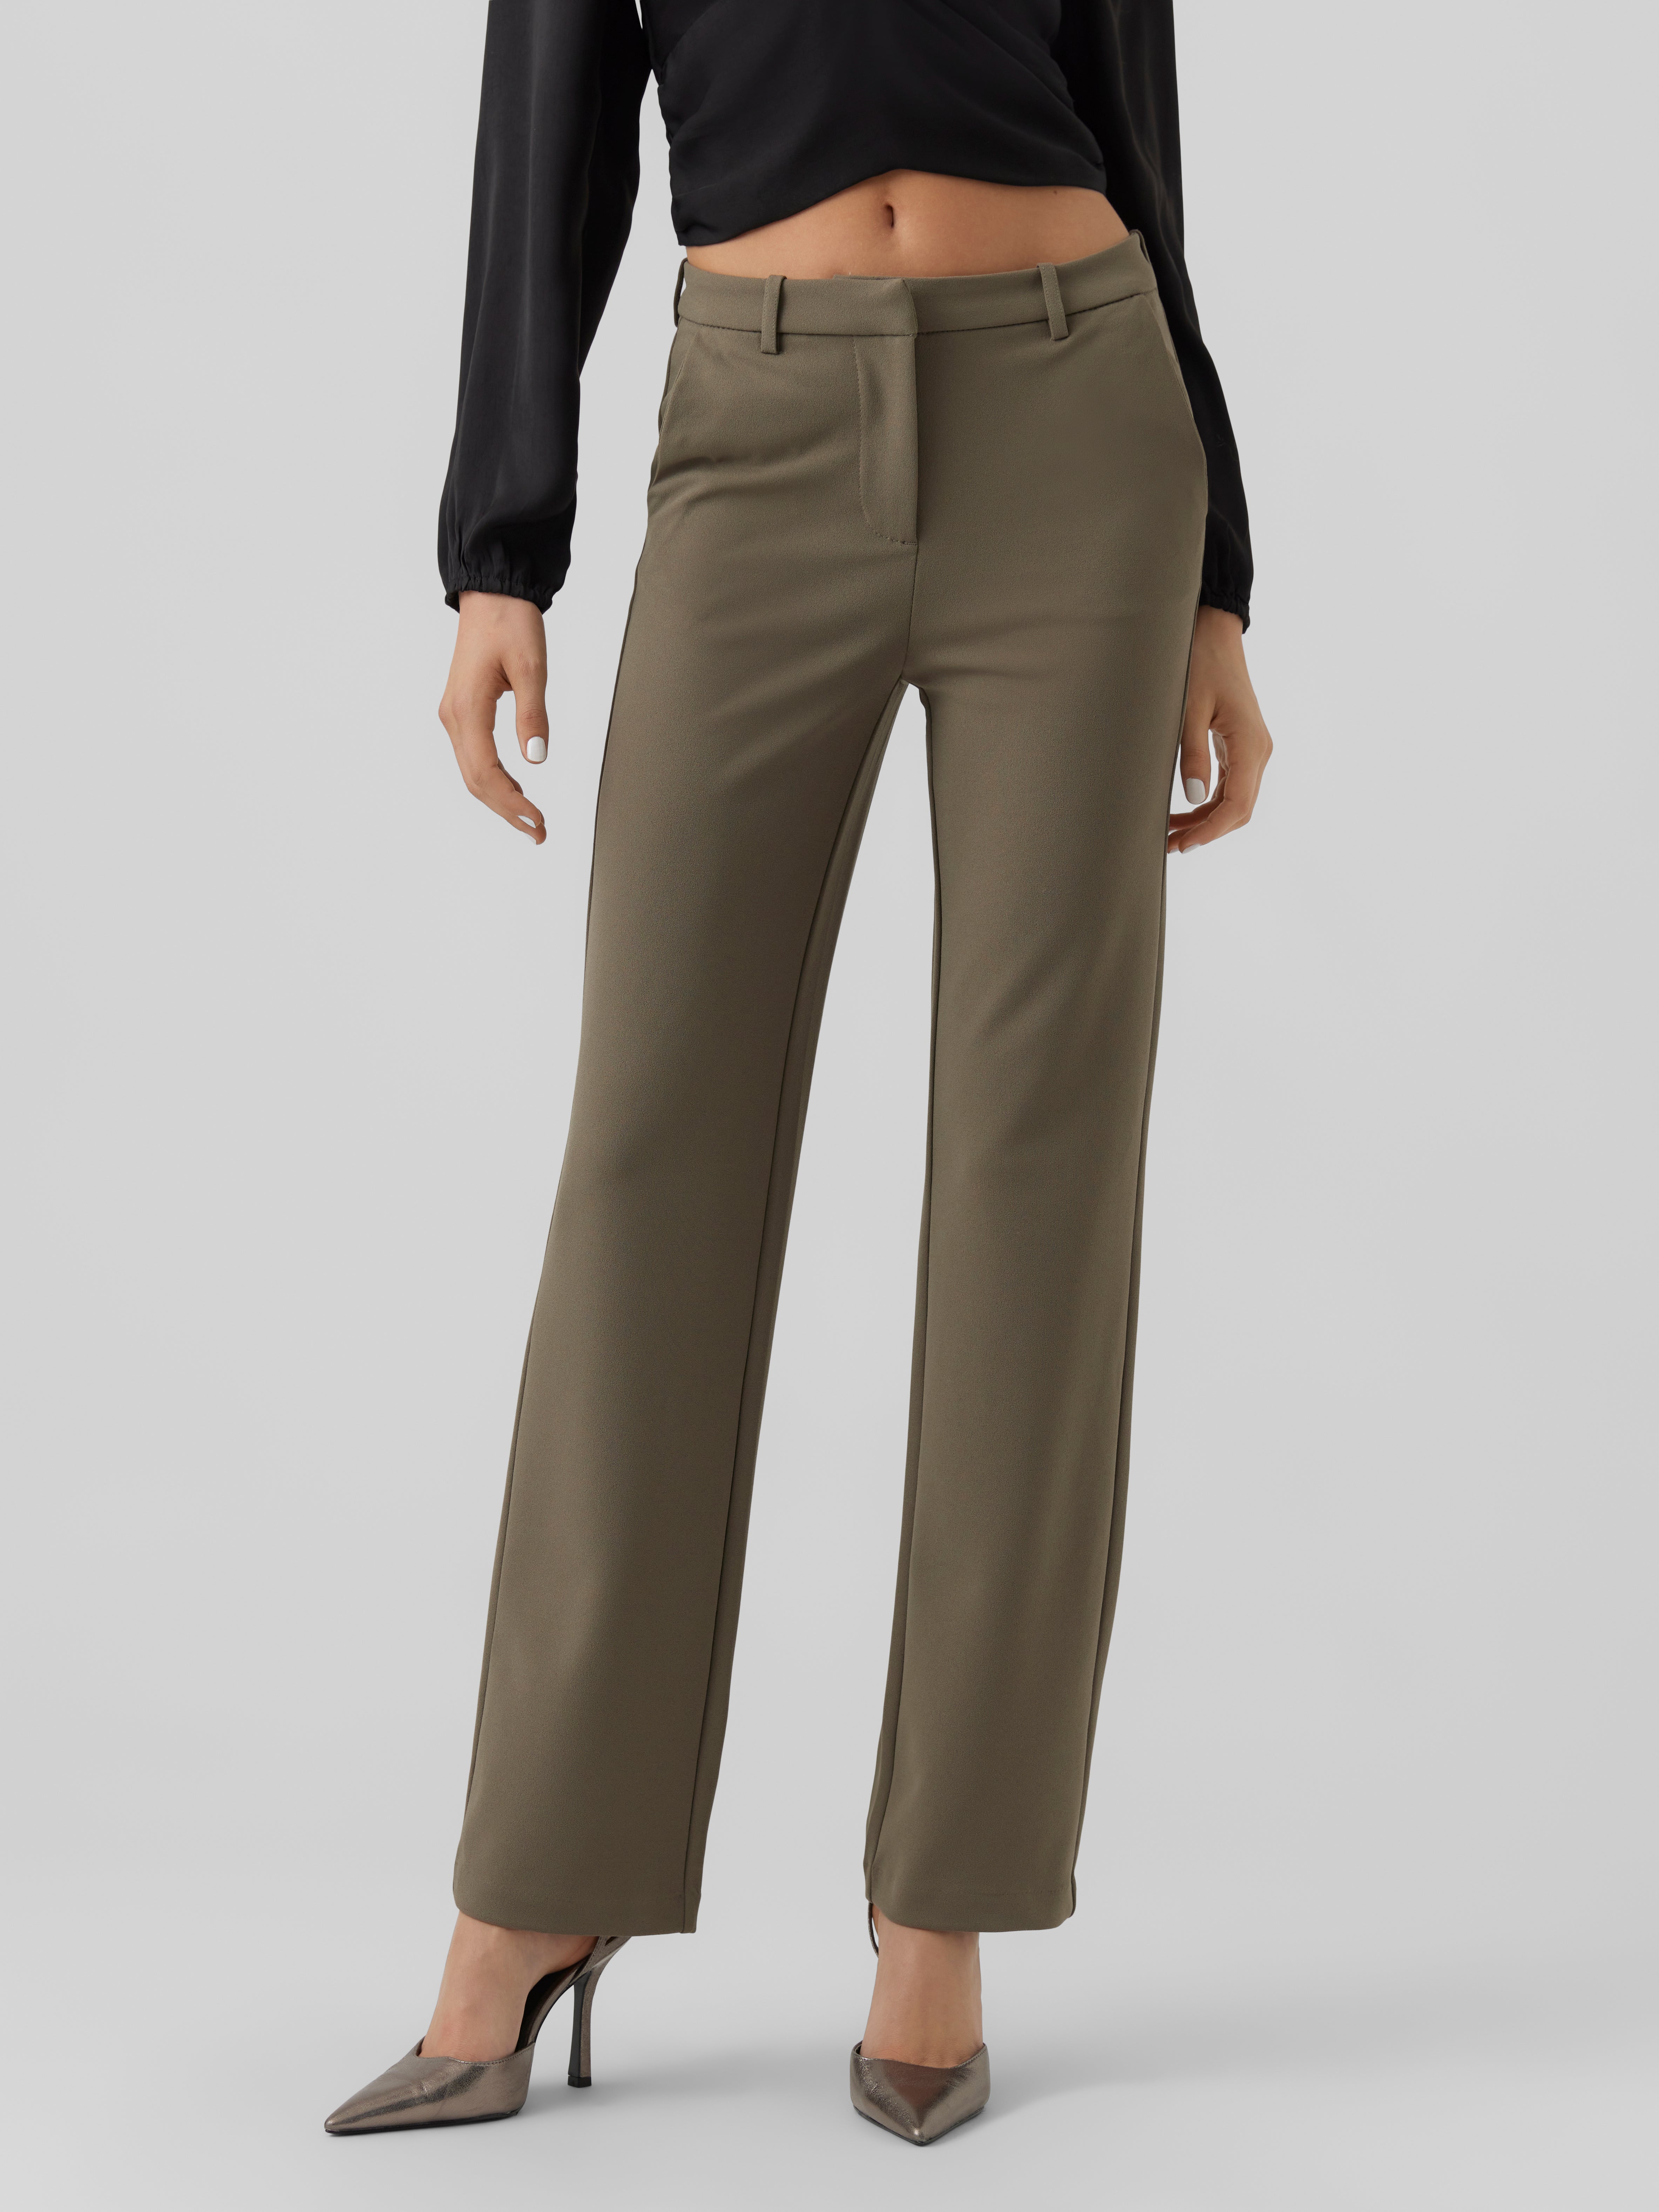 Moda Spodnie Spodnie materiałowe Vero Moda Spodnie materia\u0142owe czarny-jasnoszary Wz\u00f3r w kratk\u0119 W stylu casual 